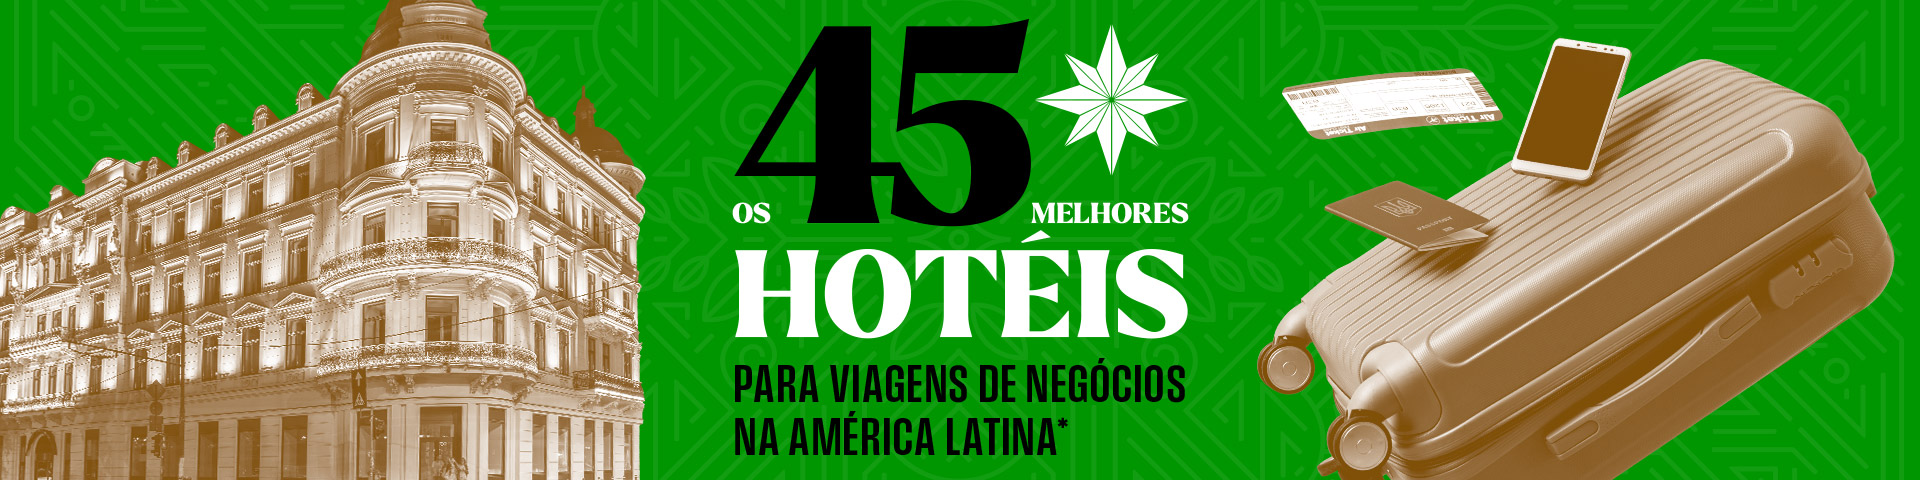 Top 45: Melhores hotéis na Colômbia, México, Argentina e América Latina para negócios